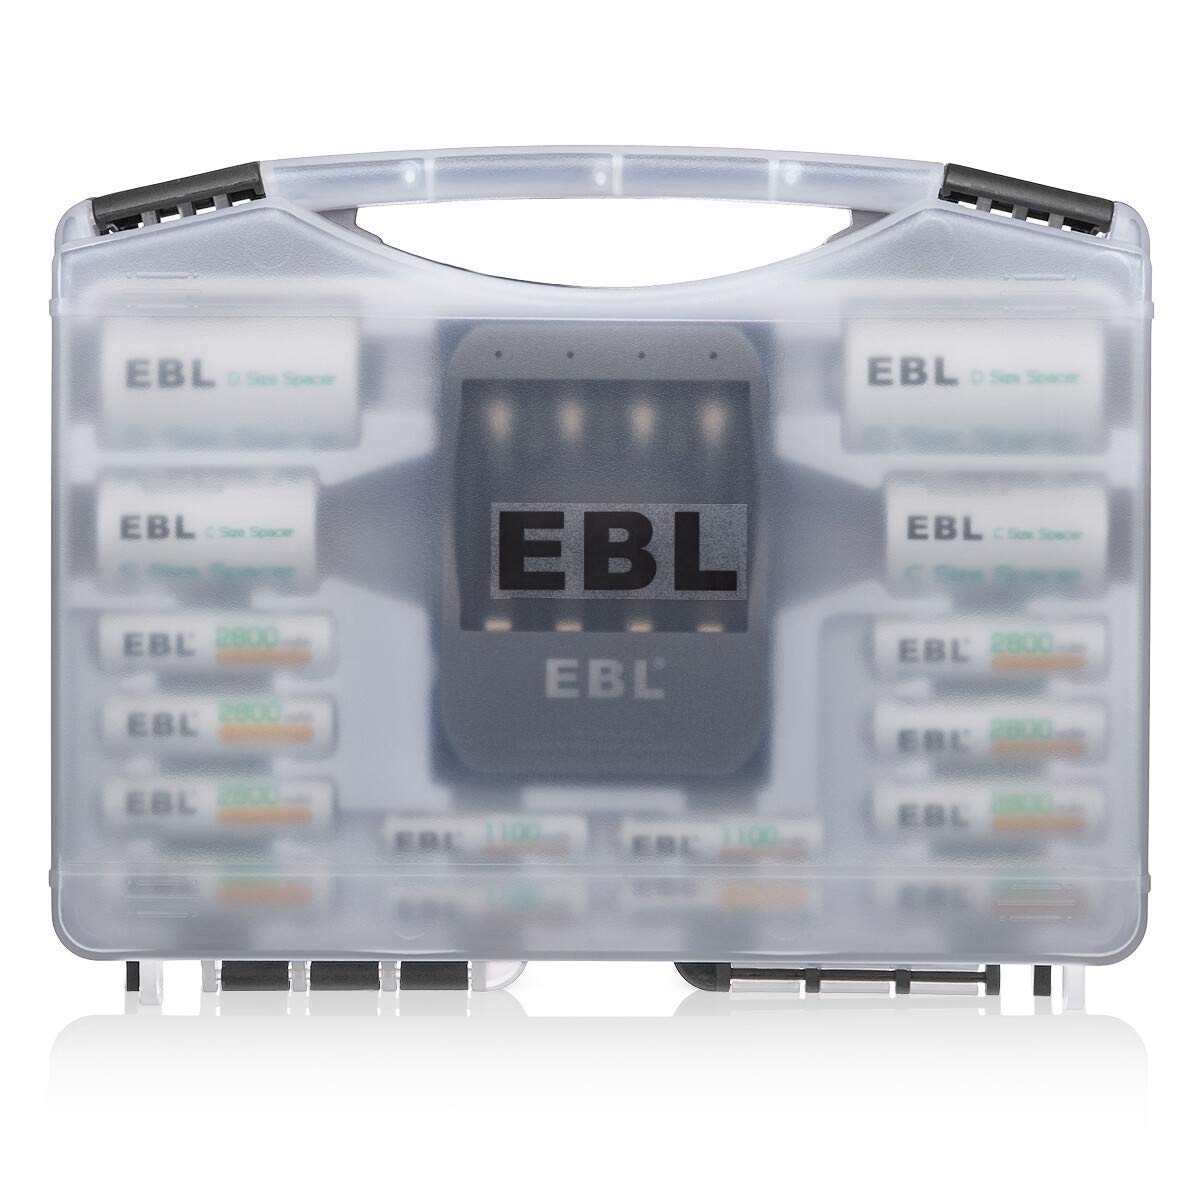 EBL Black Batteries Box Include